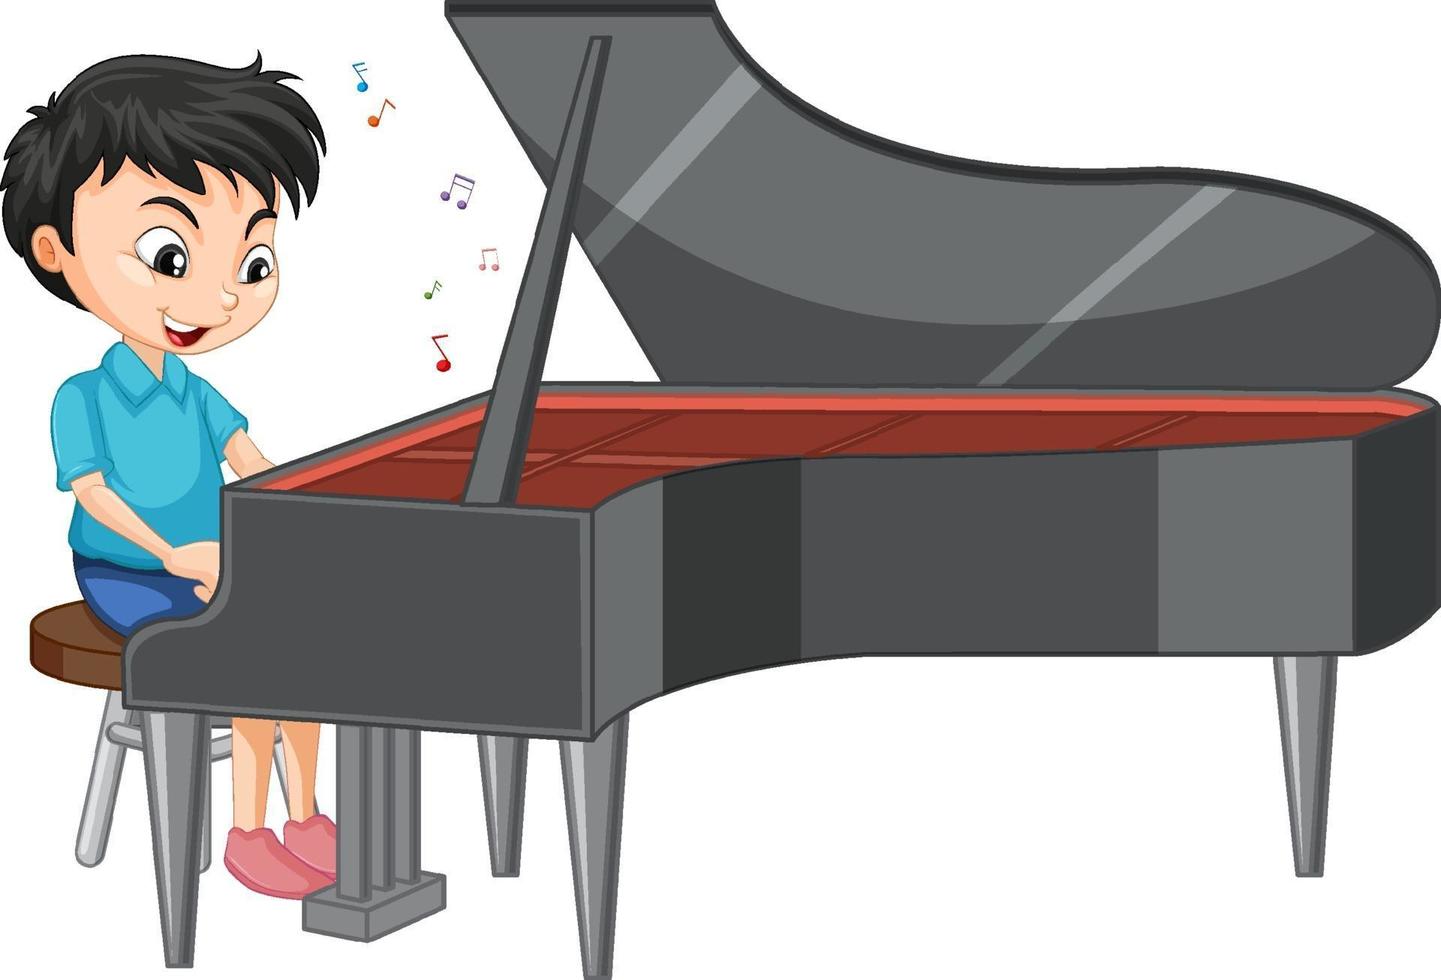 karakter van een jongen die piano speelt op een witte achtergrond vector